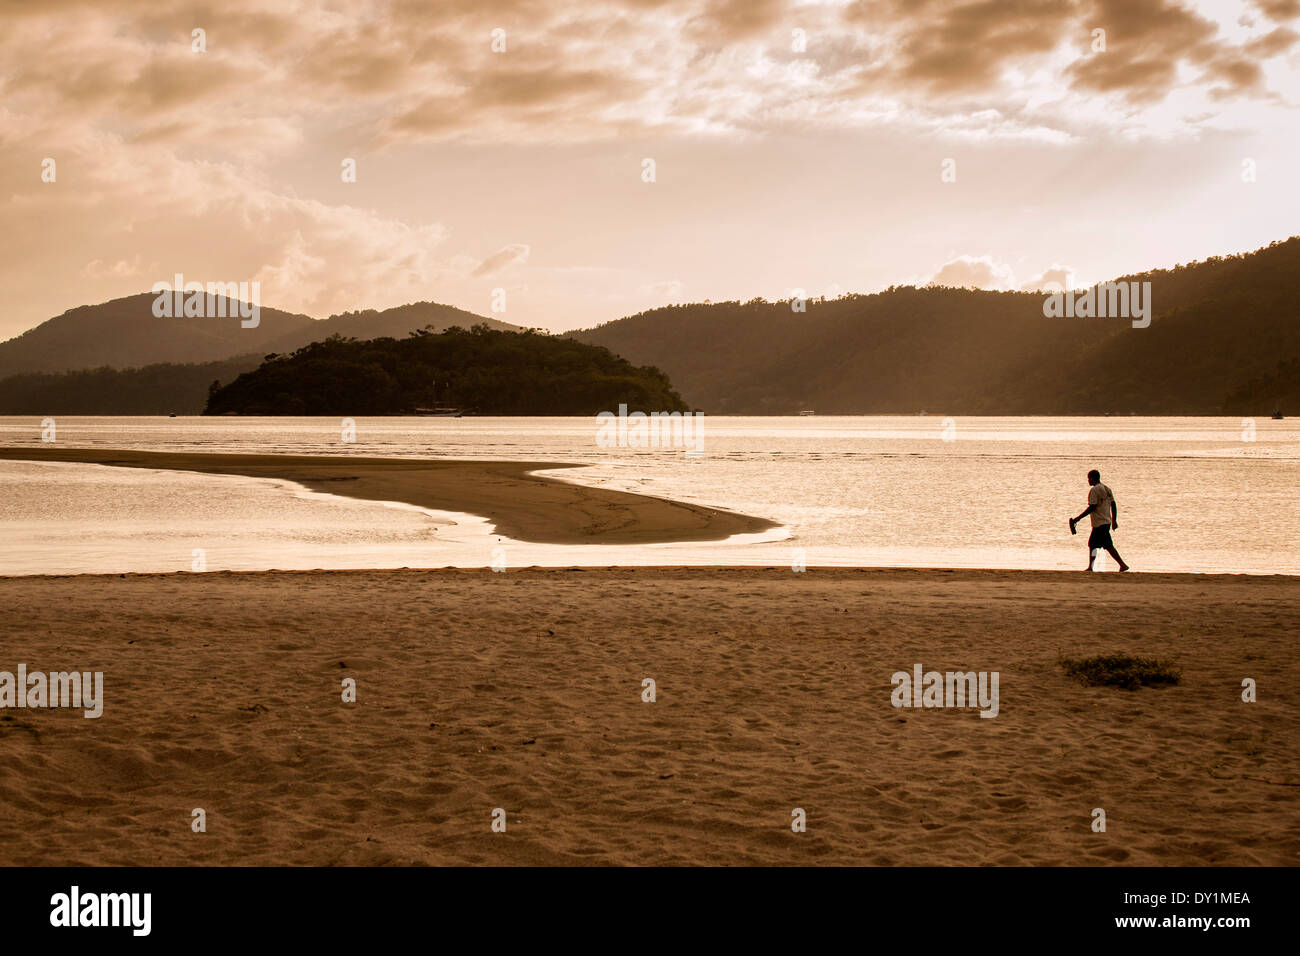 Paraty, ville coloniale, plage, homme, sunrice, Costa Verde, Rio de Janeiro, Brésil Banque D'Images